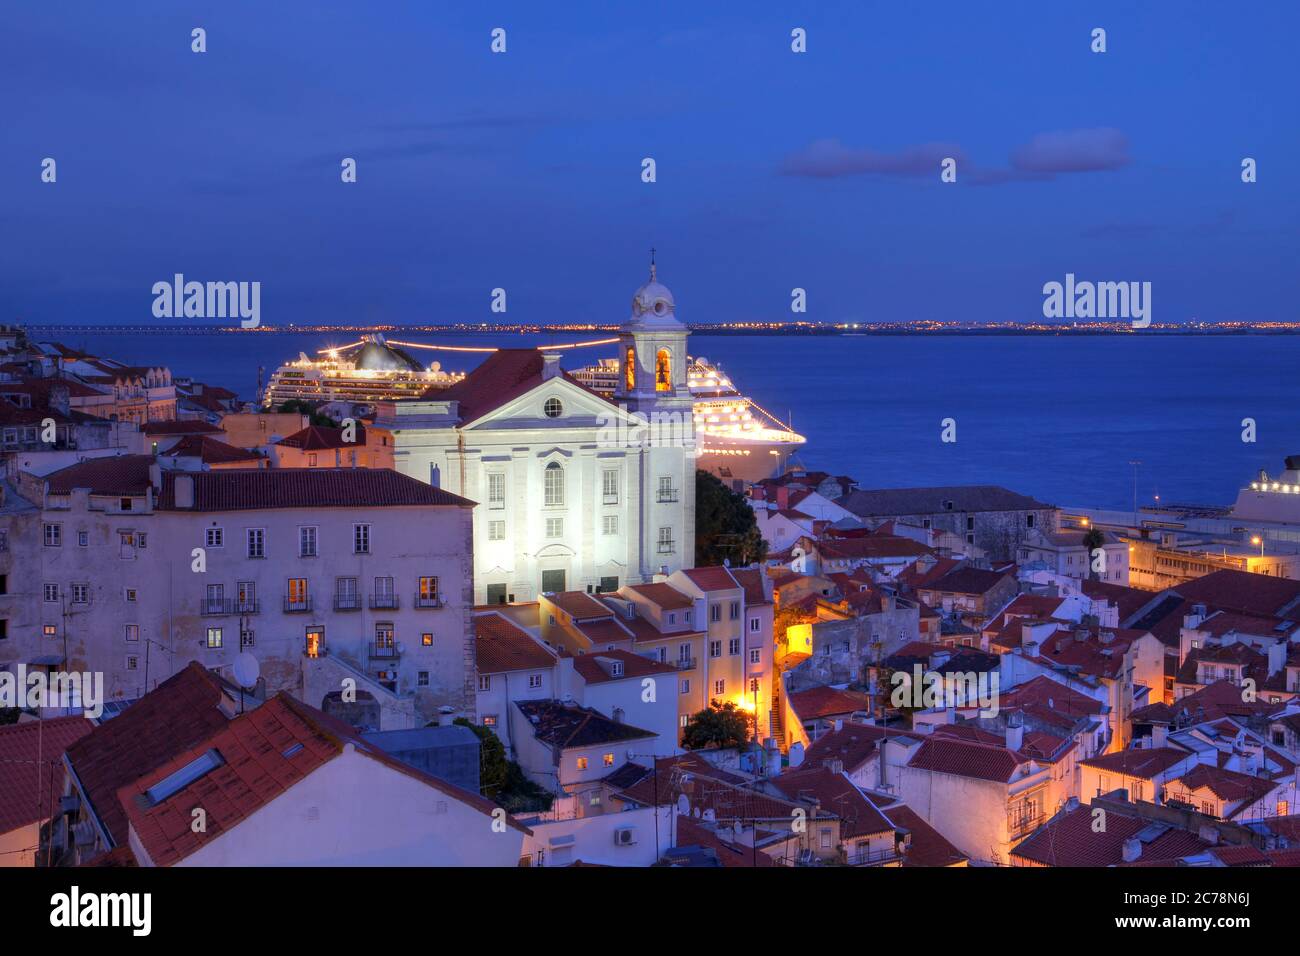 Vue au crépuscule sur Alfama (ancien quartier de Lisbonne, Portugal) vue depuis le Miradouro (Belvédère) de Santa Lucia avec l'église Saint-Étienne (Igreja d Banque D'Images